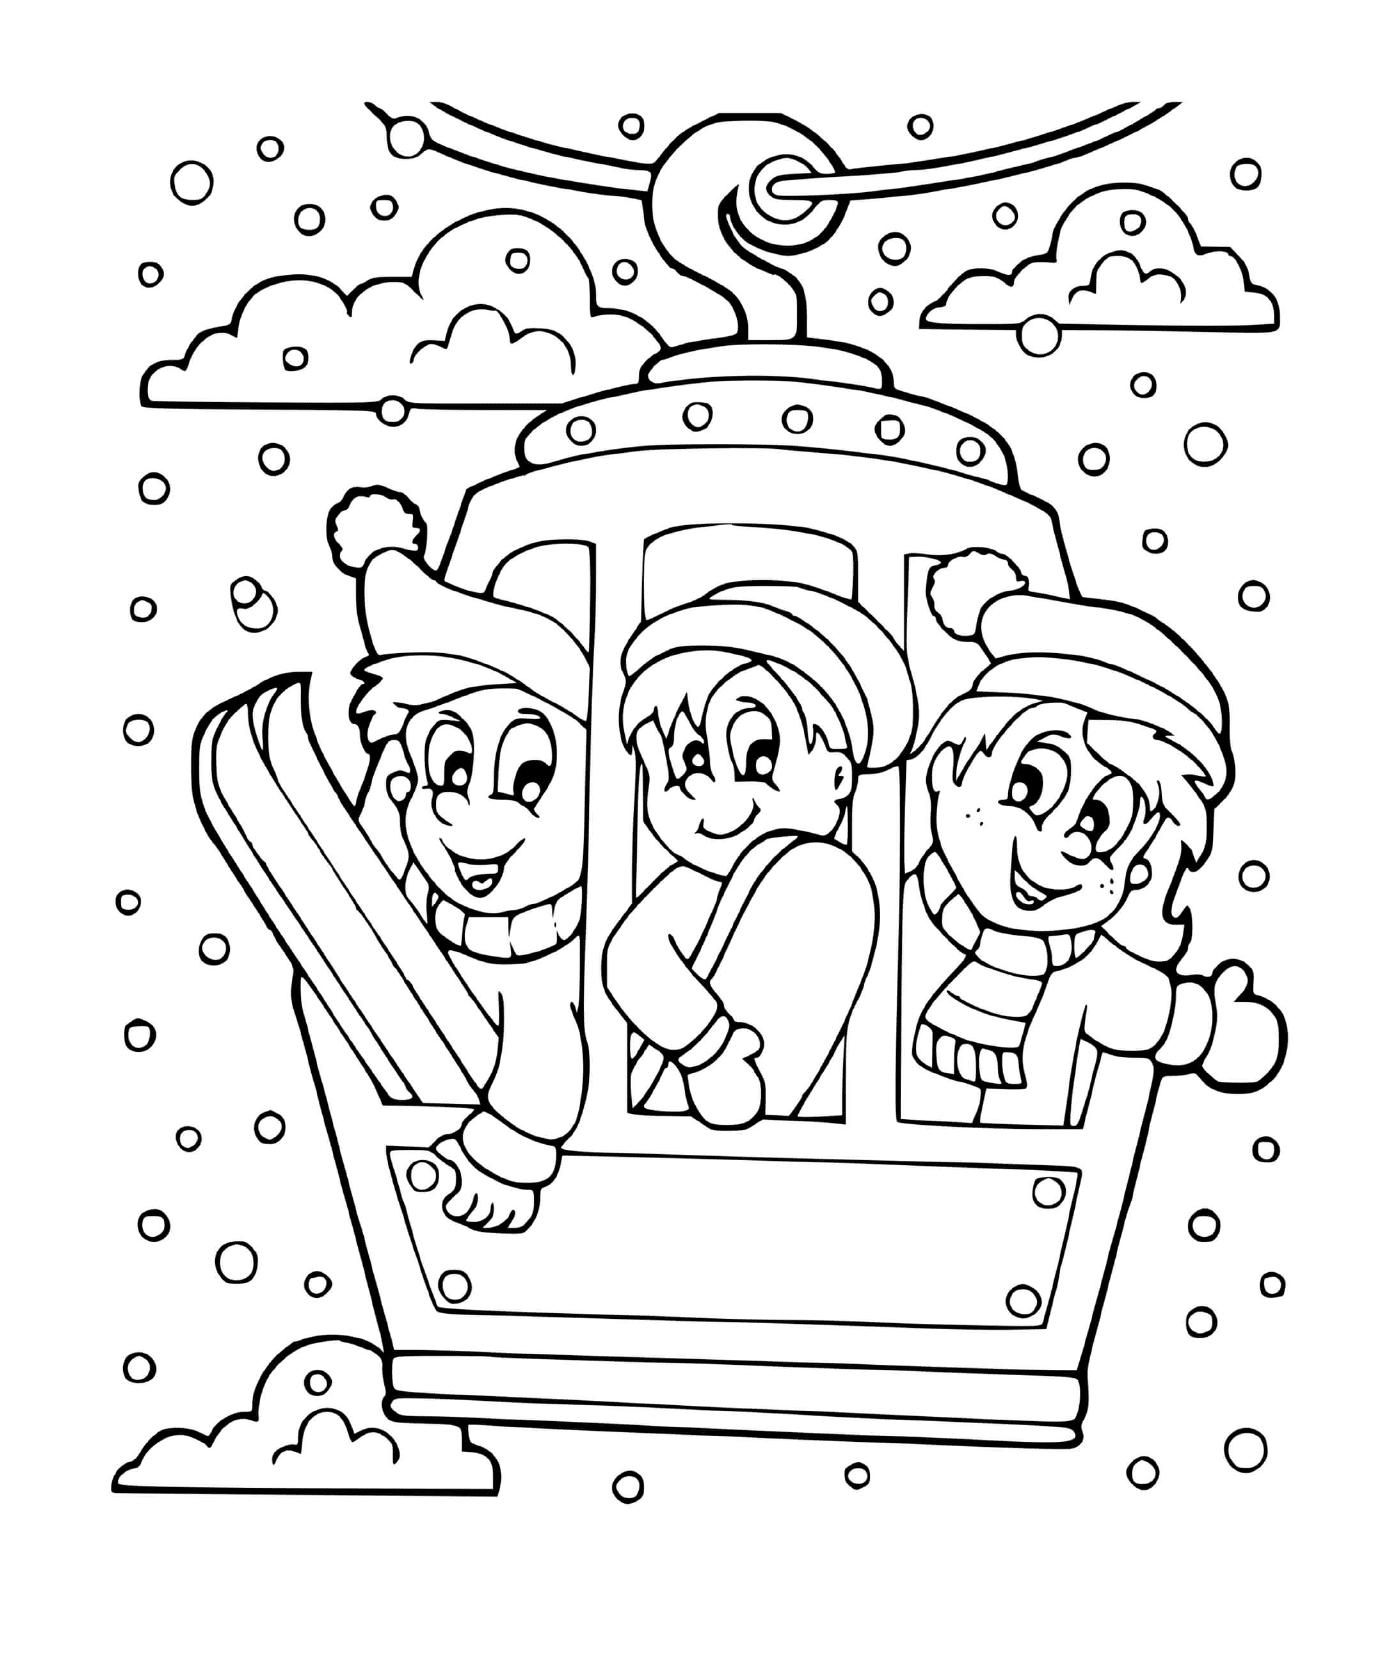  Friends play a winter sport 